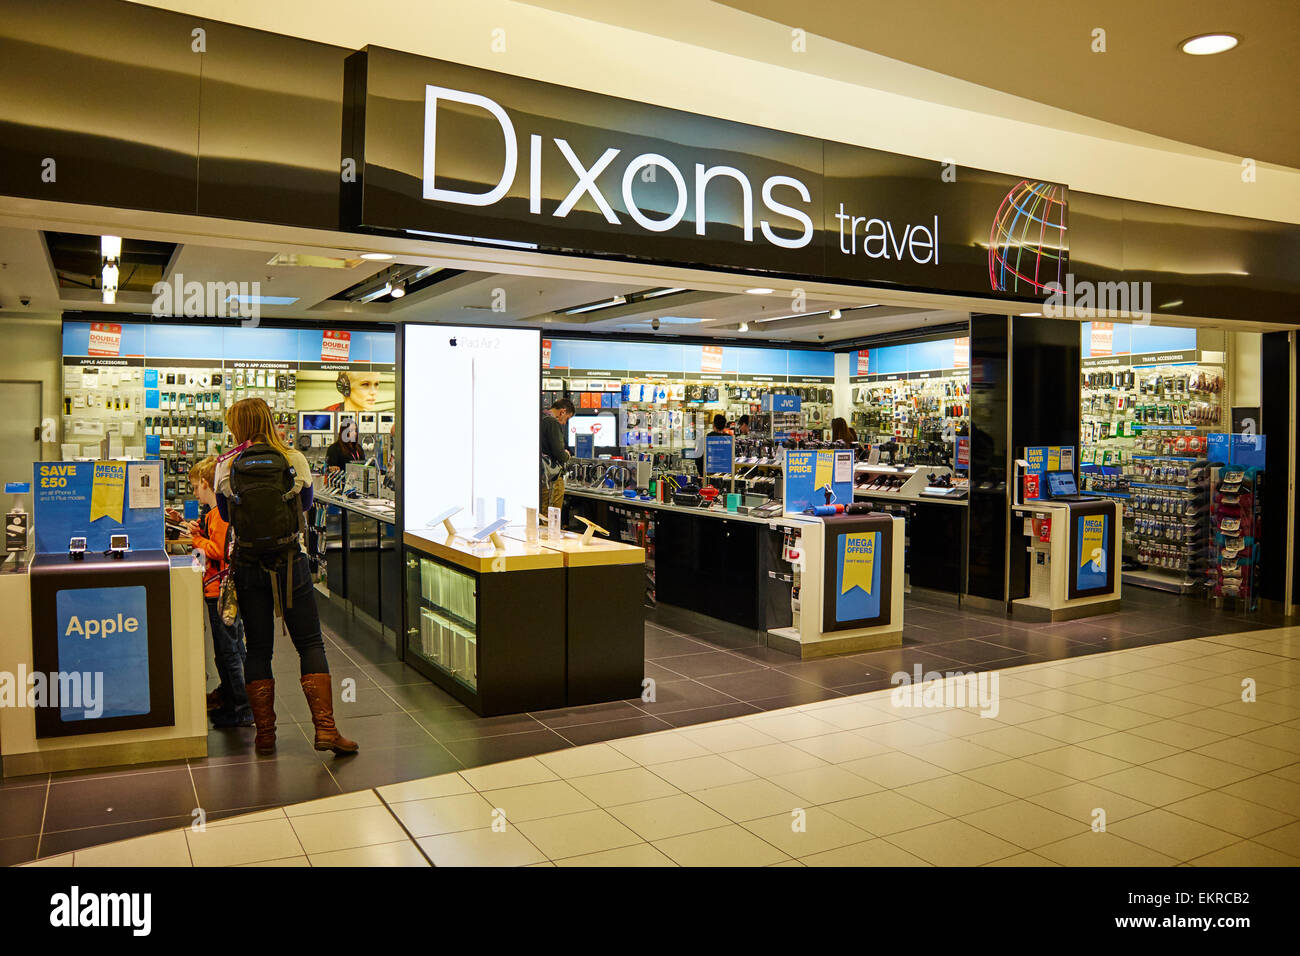 Dixons tienda libre de impuestos del aeropuerto de Birmingham UK Foto de stock